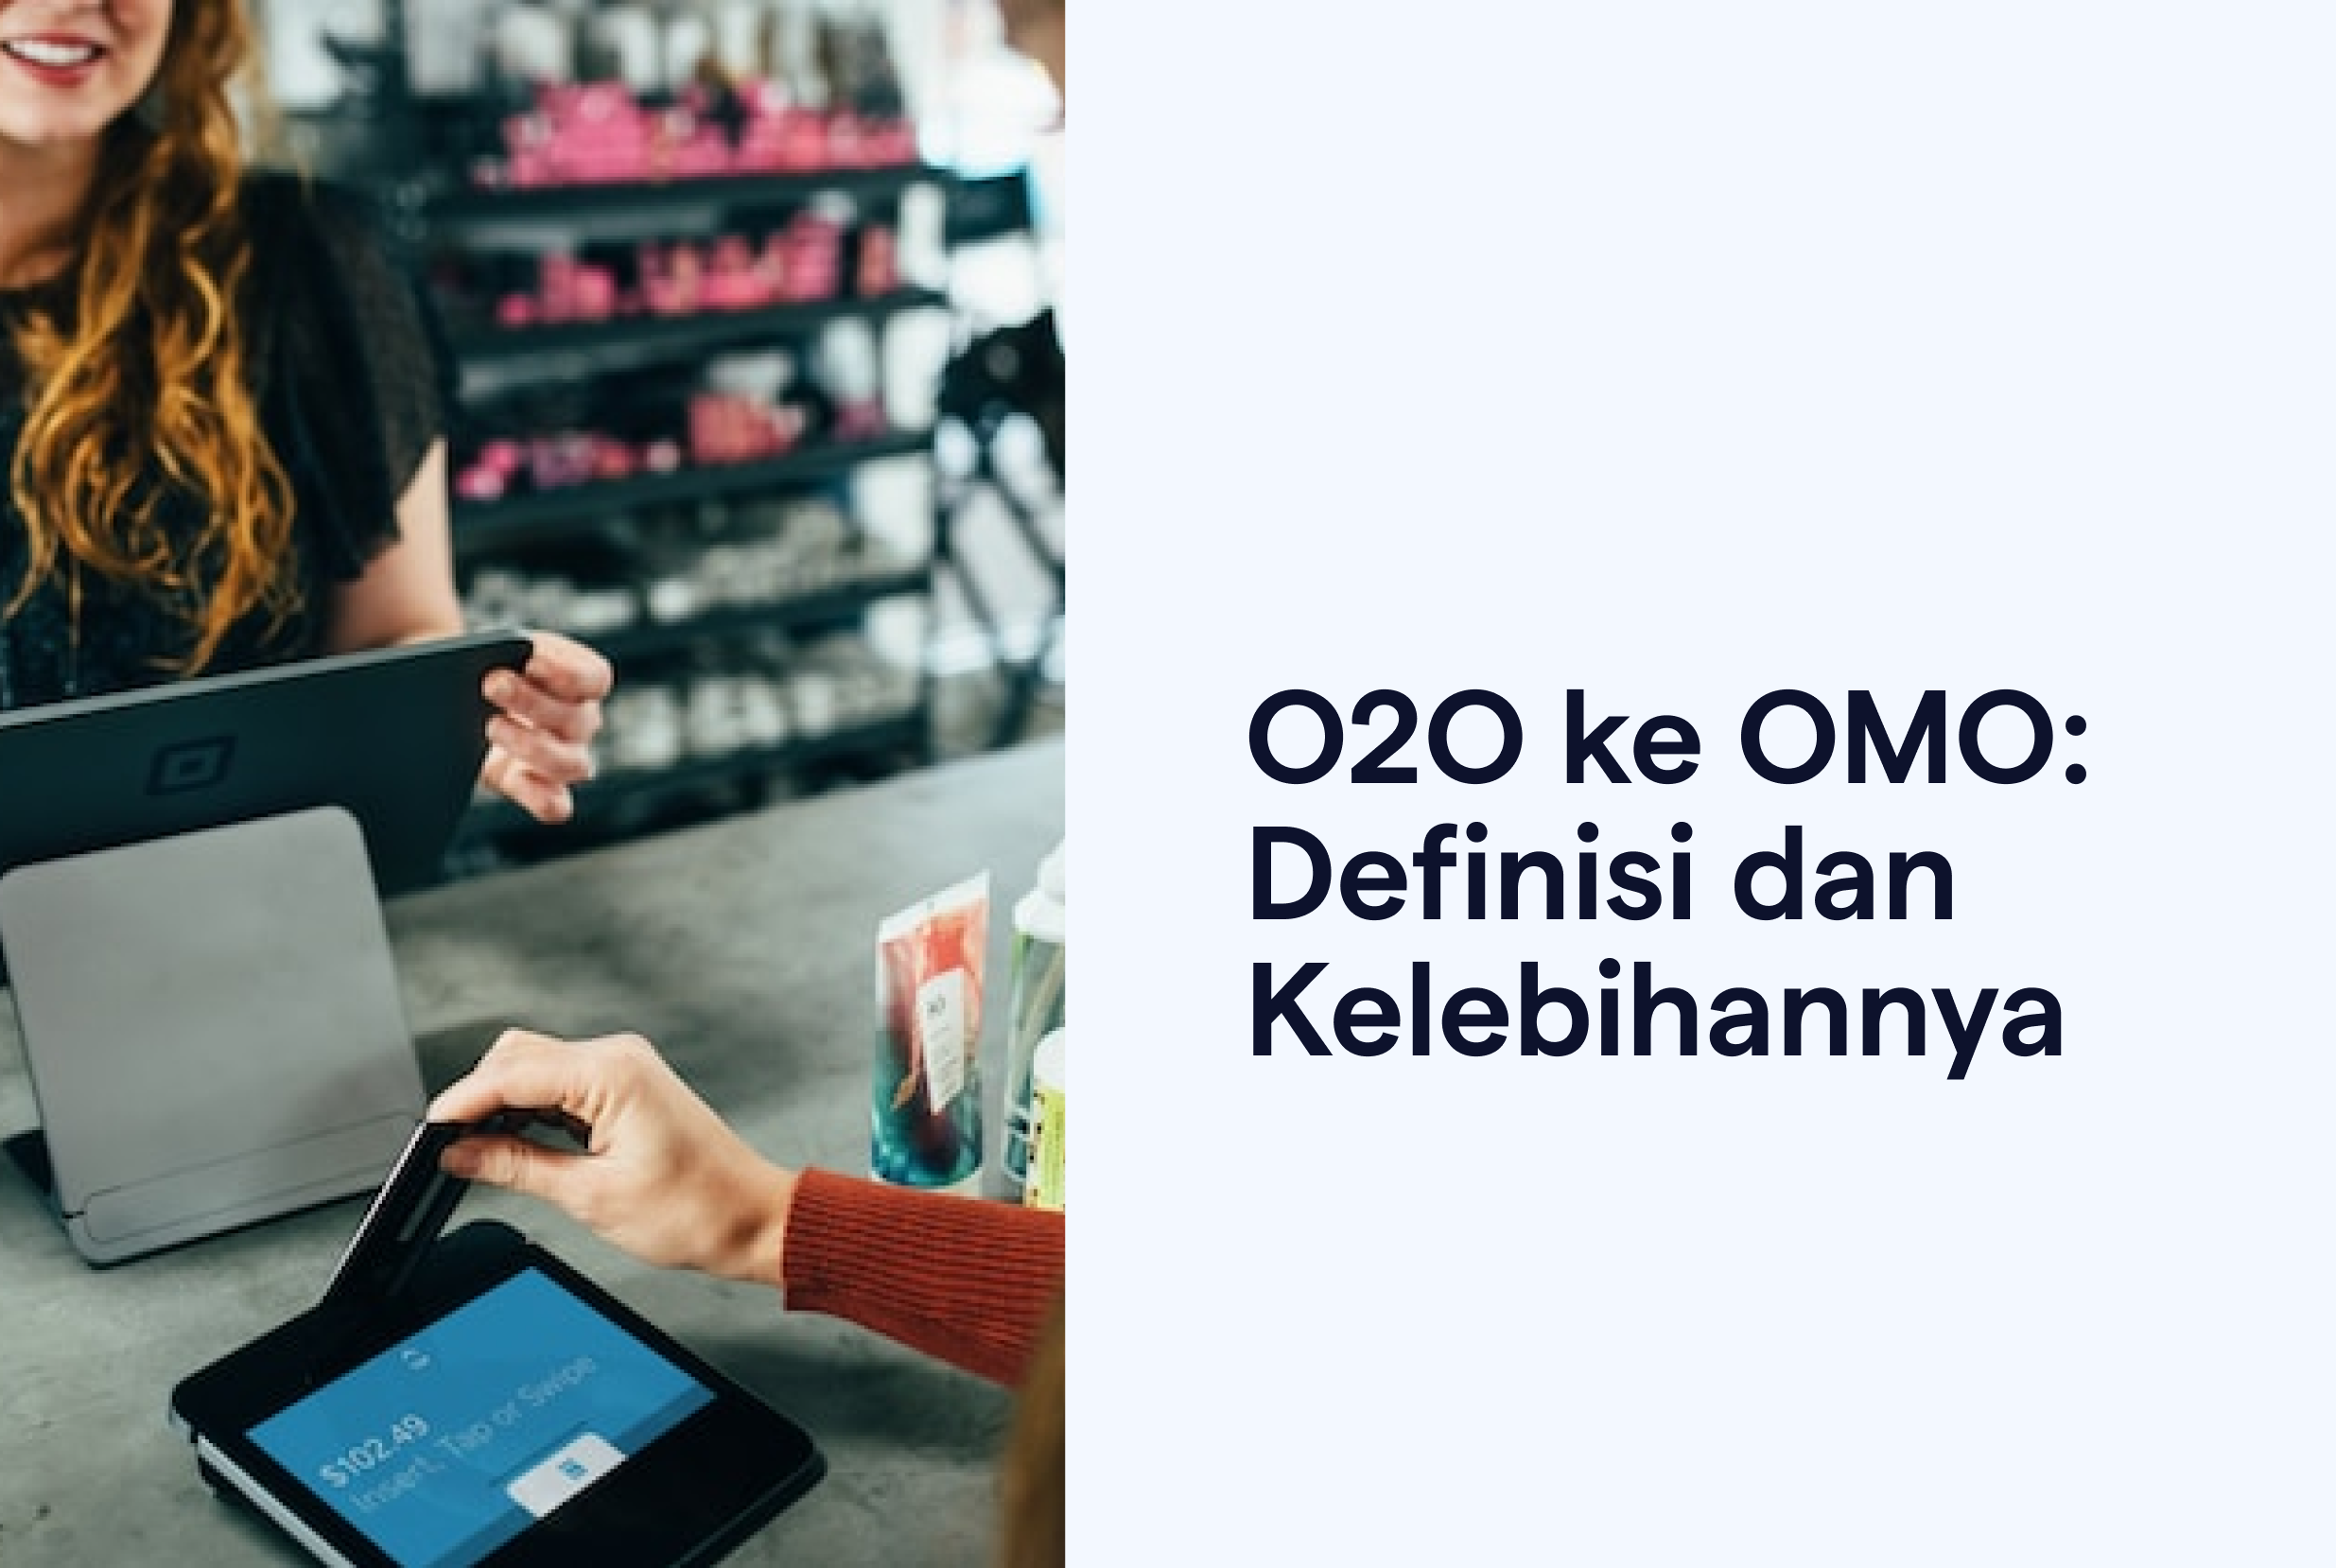 O2O OMO Definisi Kelebihannya